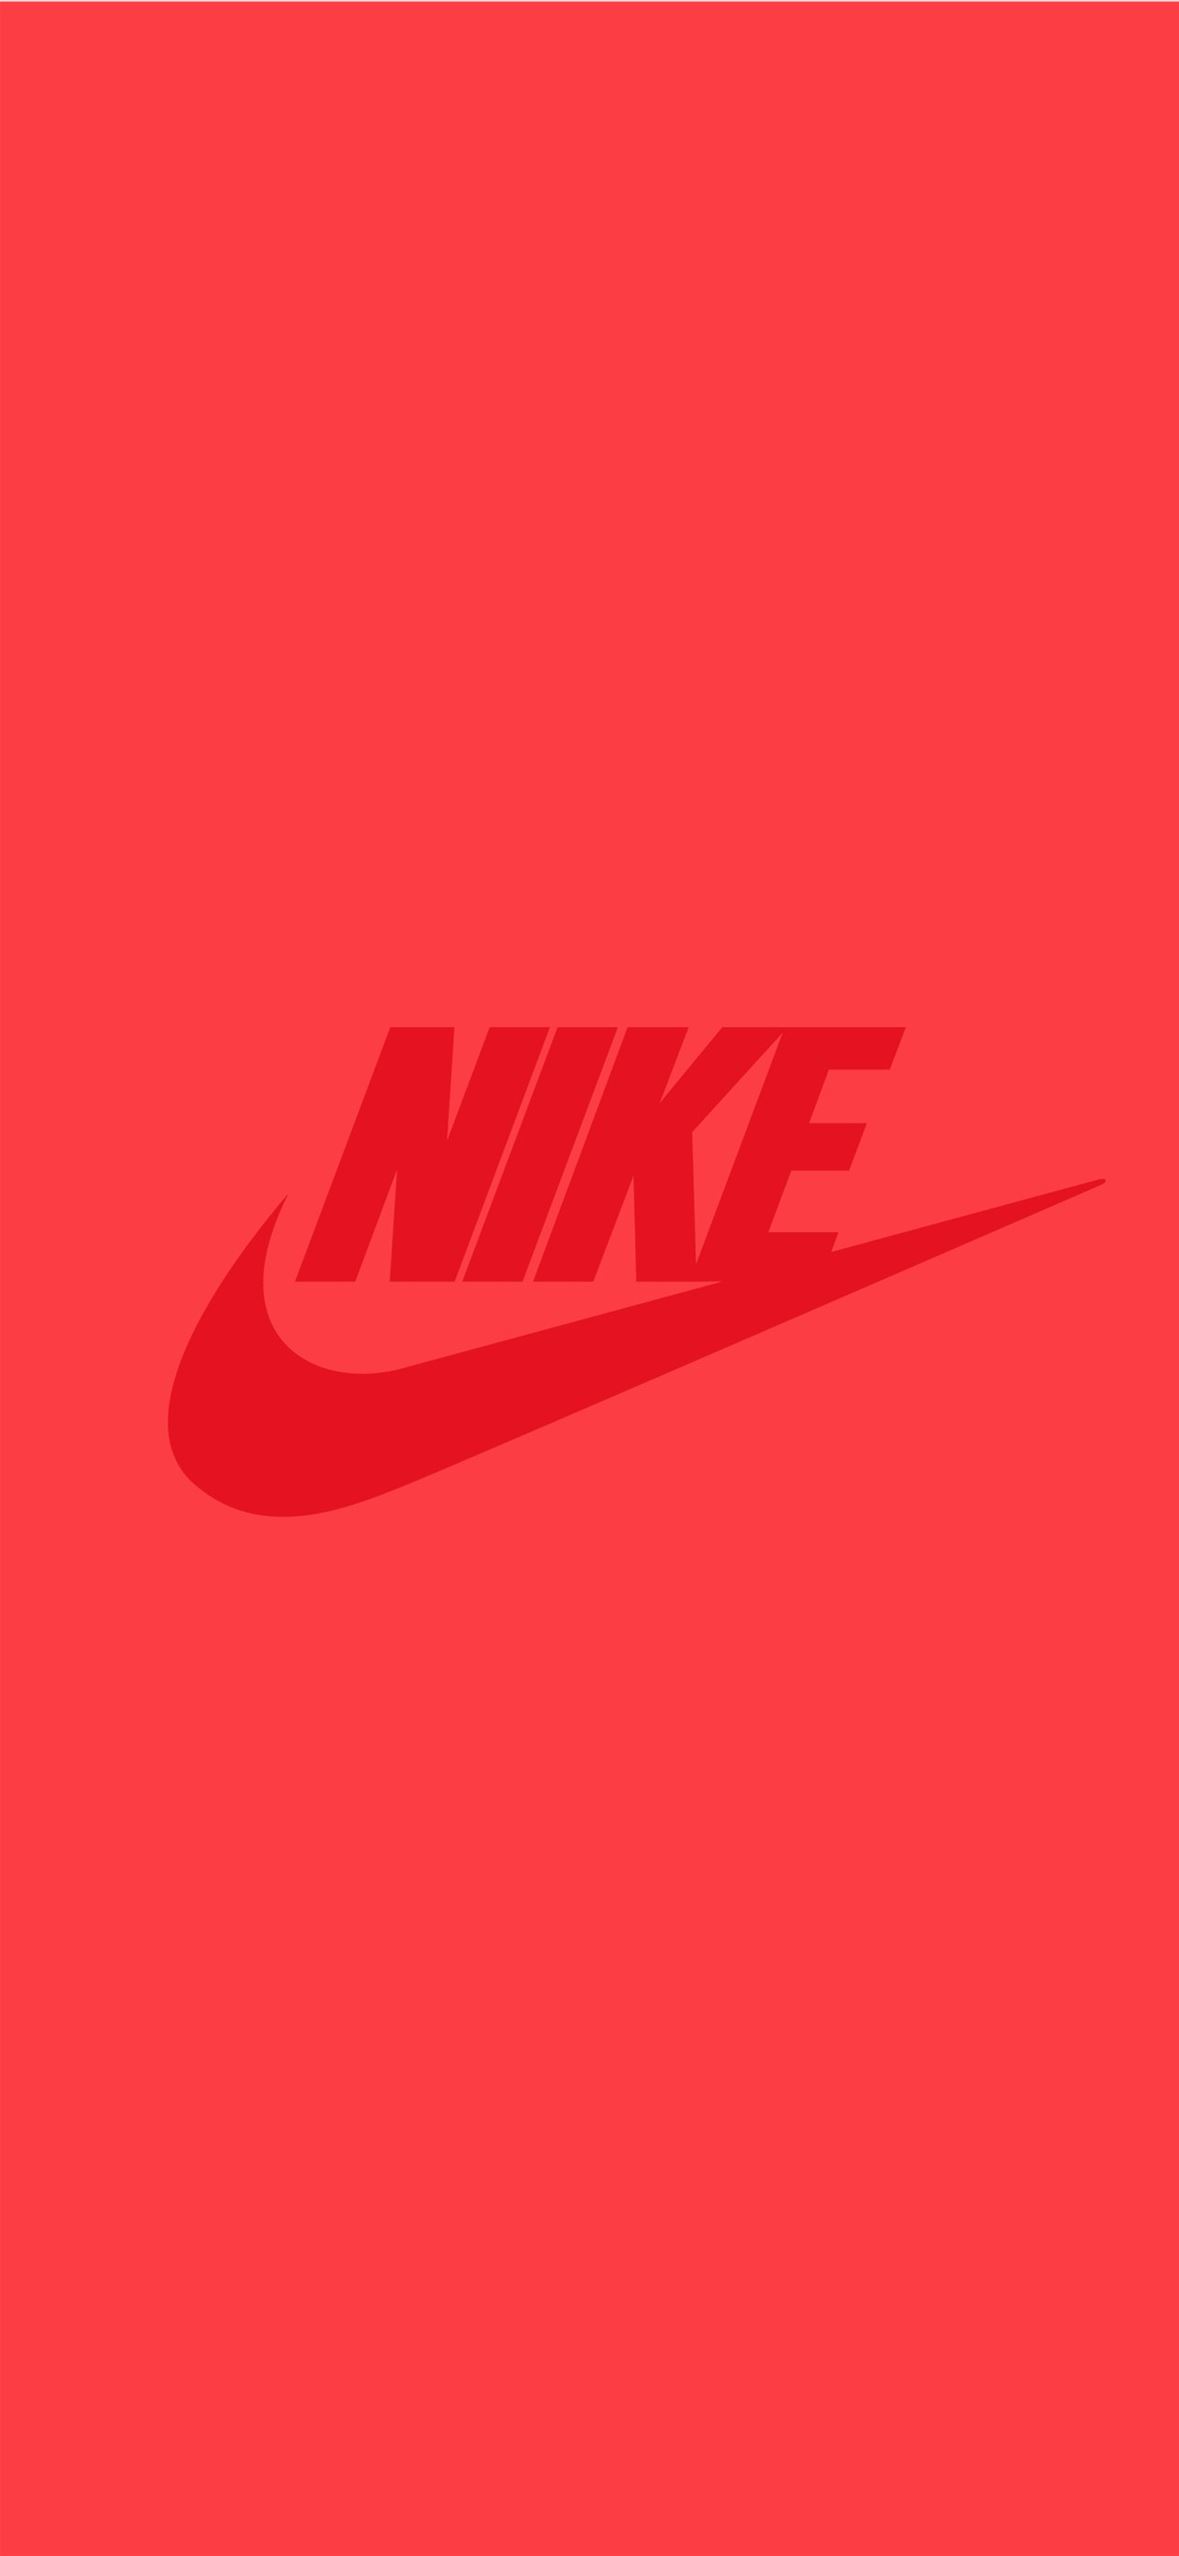 Độc quyền là của bạn! Tải về hình nền iPhone Nike hiện đại và đầy phong cách để thổi hồn vào thiết bị của mình. Những đôi giày đen trắng và đỏ đầy ấn tượng của Nike trên nền đen sẽ khiến cho điện thoại của bạn thêm phần bắt mắt và cuốn hút.